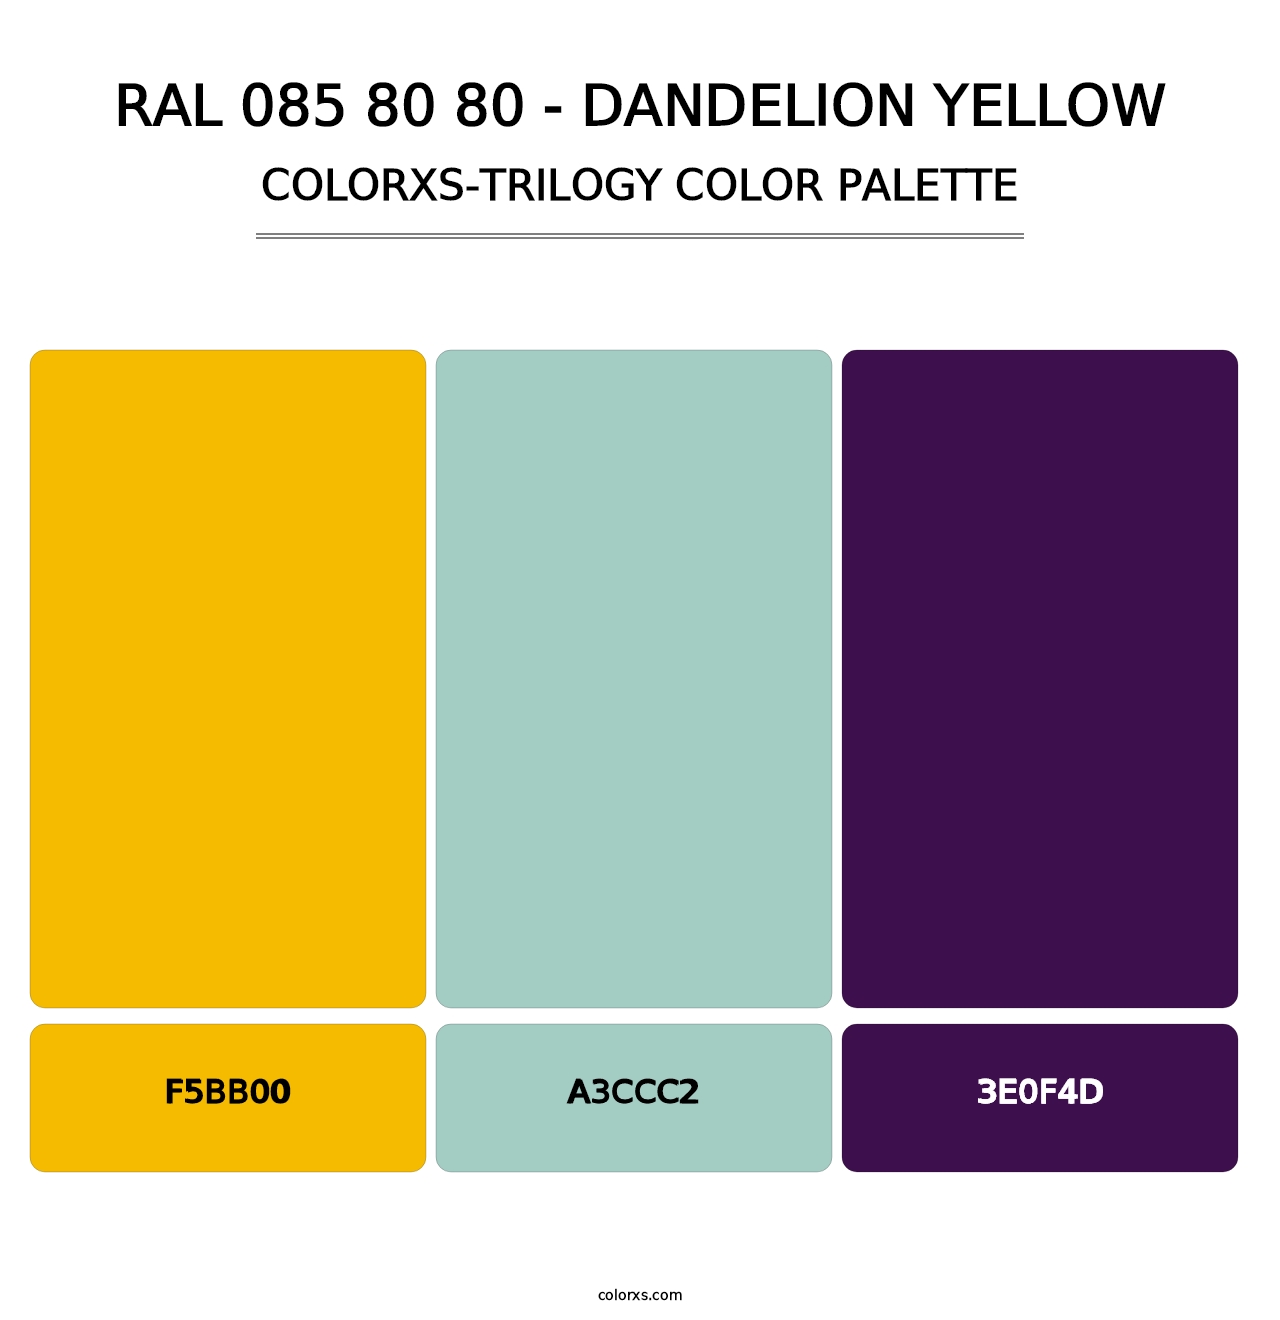 RAL 085 80 80 - Dandelion Yellow - Colorxs Trilogy Palette